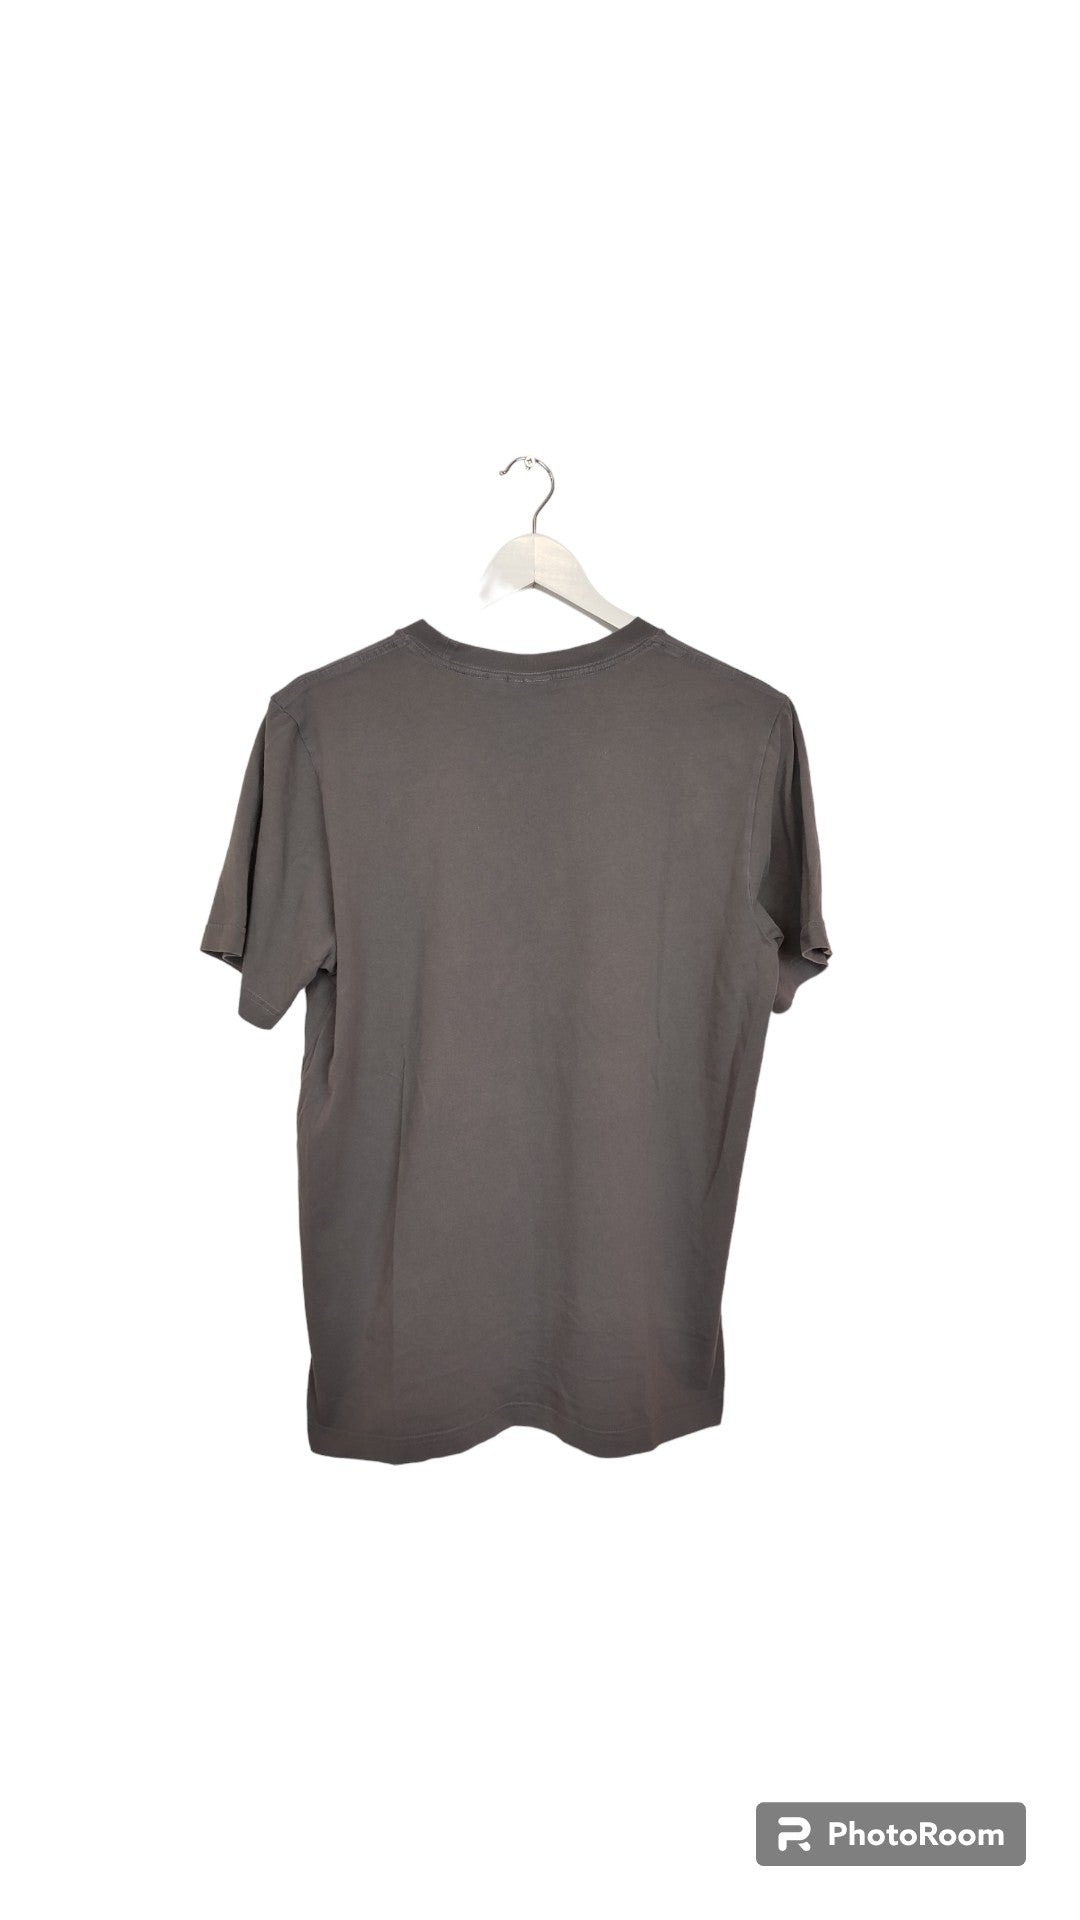 Ανδρική Casual Μπλούζα - T-Shirt ADIDAS σε Χακί Χρώμα (Large)